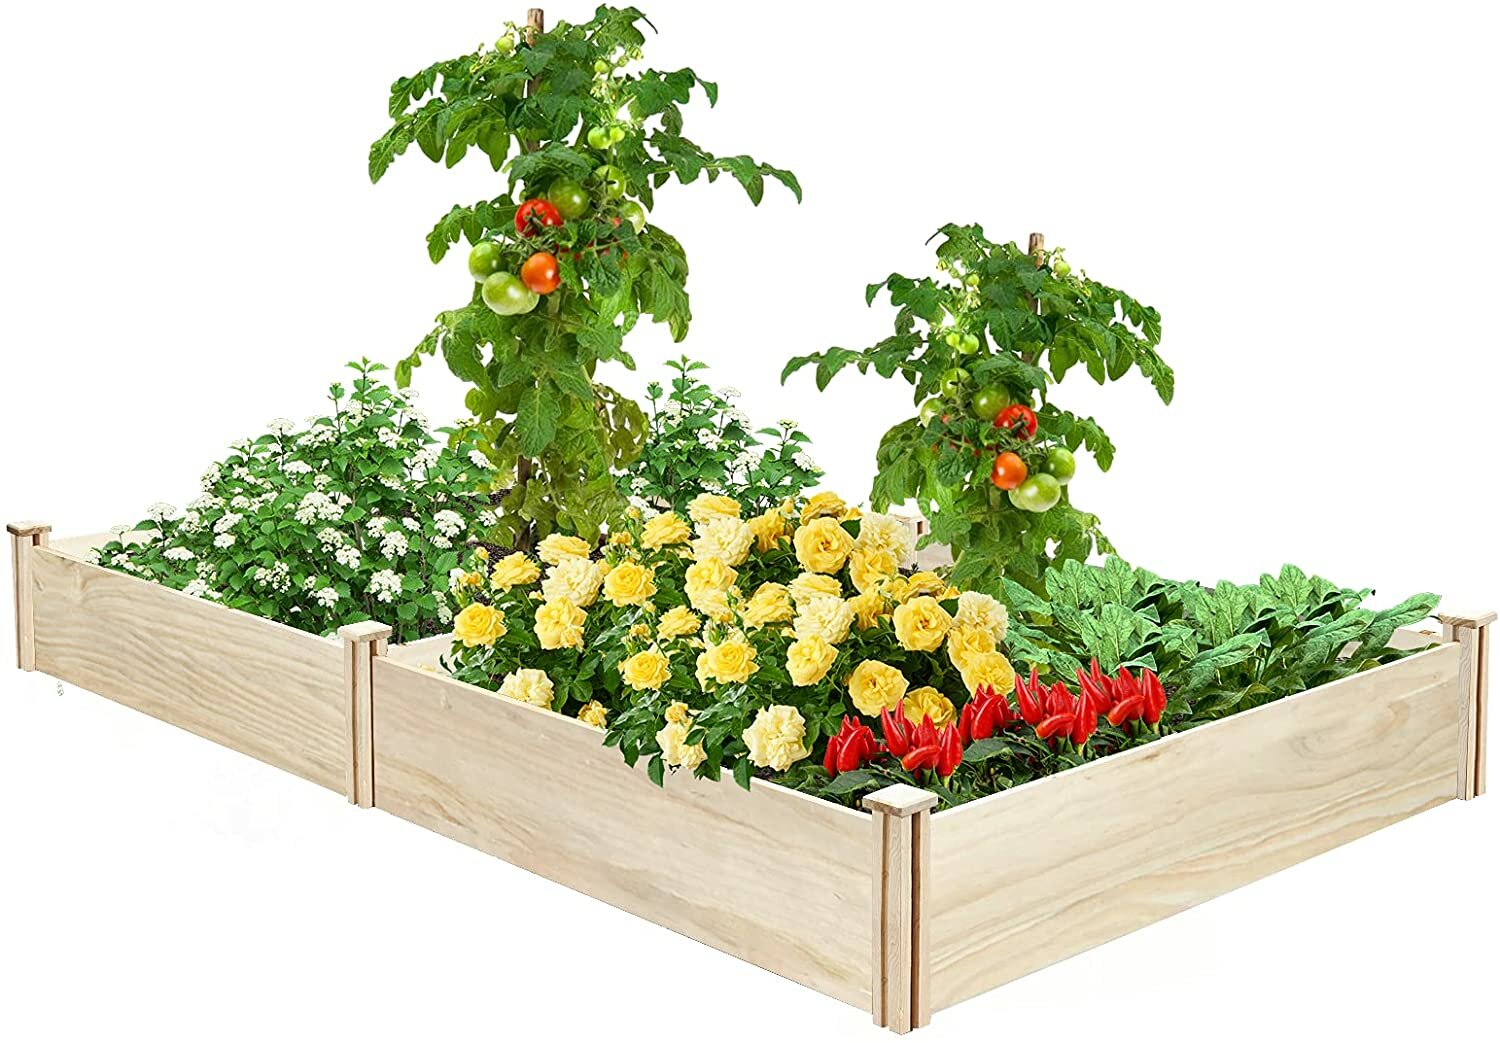 KingSo Verhoogd Tuinbed 8 × 4 × 1FT Houten Tuinbed Verhoogde Planter Box Outdoor Tuin Verhoogd Bed Kit voor Groentebloem Kruidentuinieren Achtertuin Patio Natuurlijk Hout